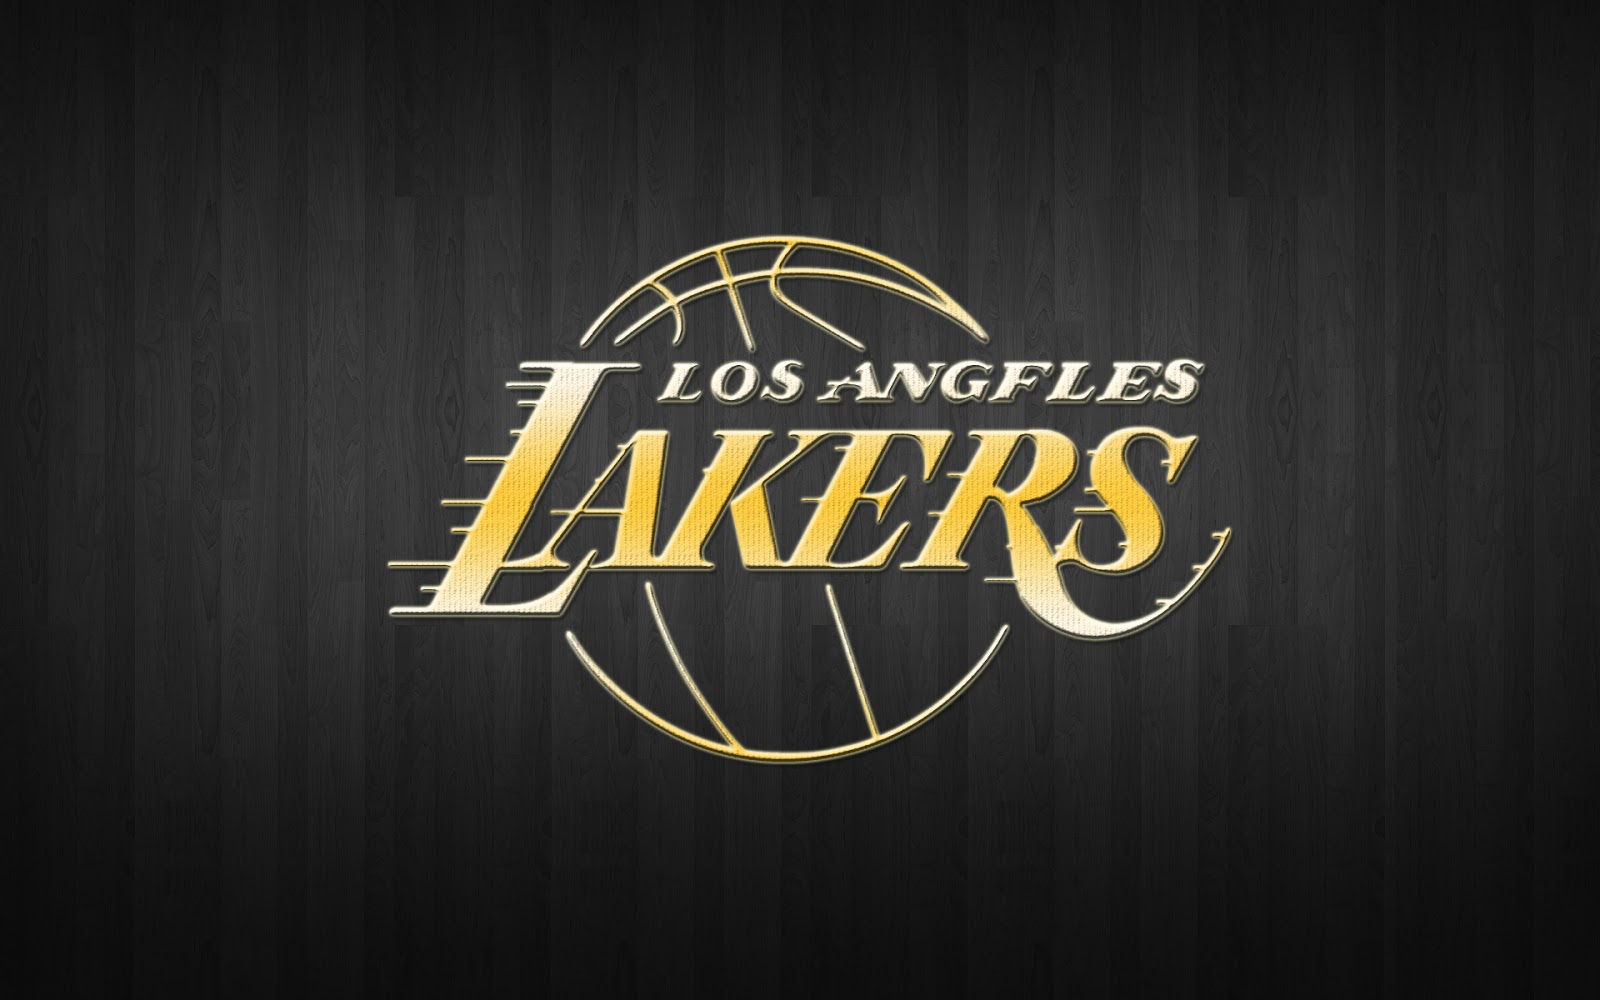 Download Cool Nba Los Angeles Lakers Artwork Wallpaper